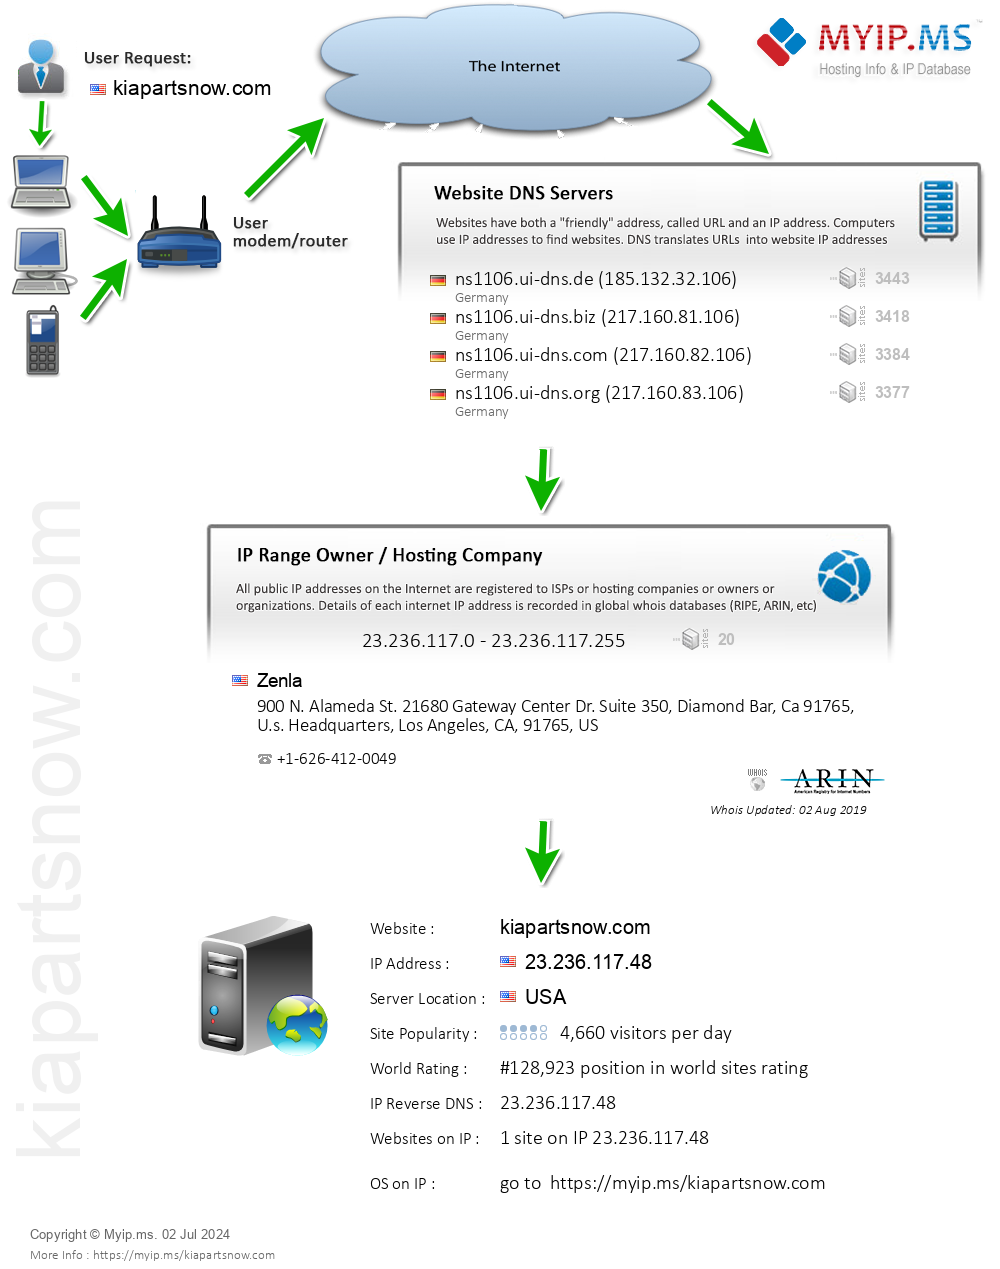 Kiapartsnow.com - Website Hosting Visual IP Diagram